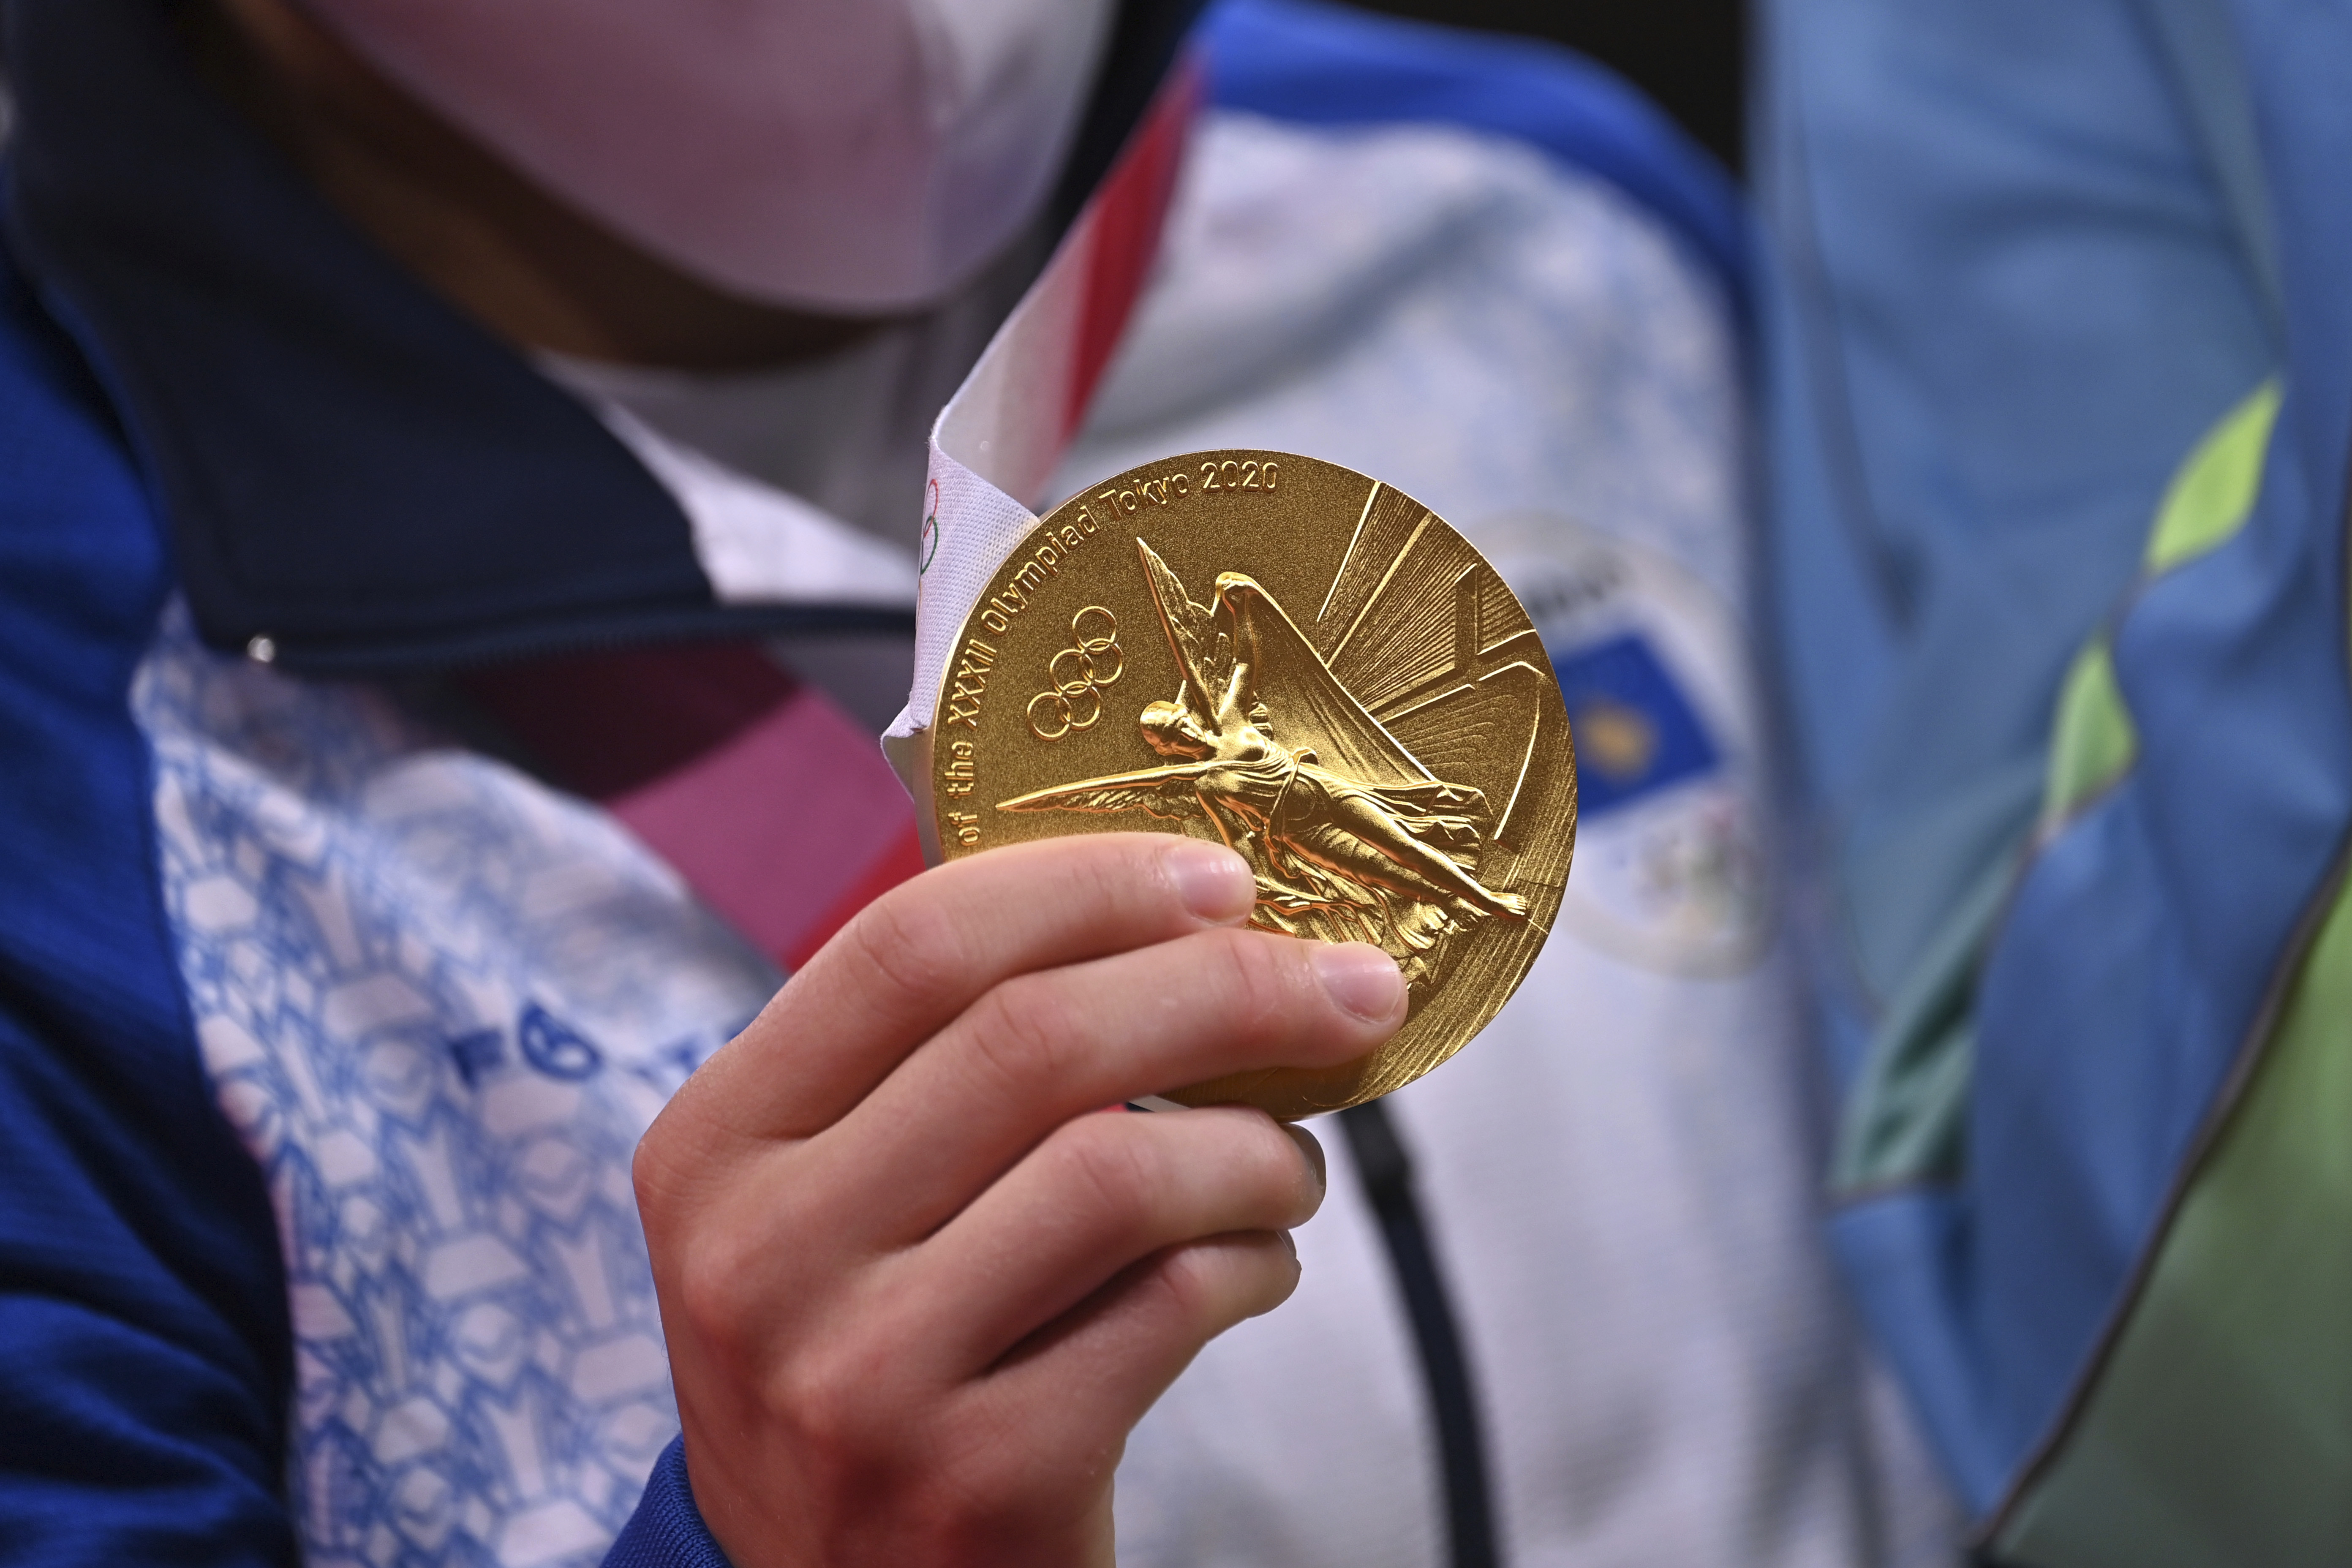 Казахстан выплатит спортсменам по 250 тысяч долларов за каждое олимпийское золото. Это много или мало? Разбираемся